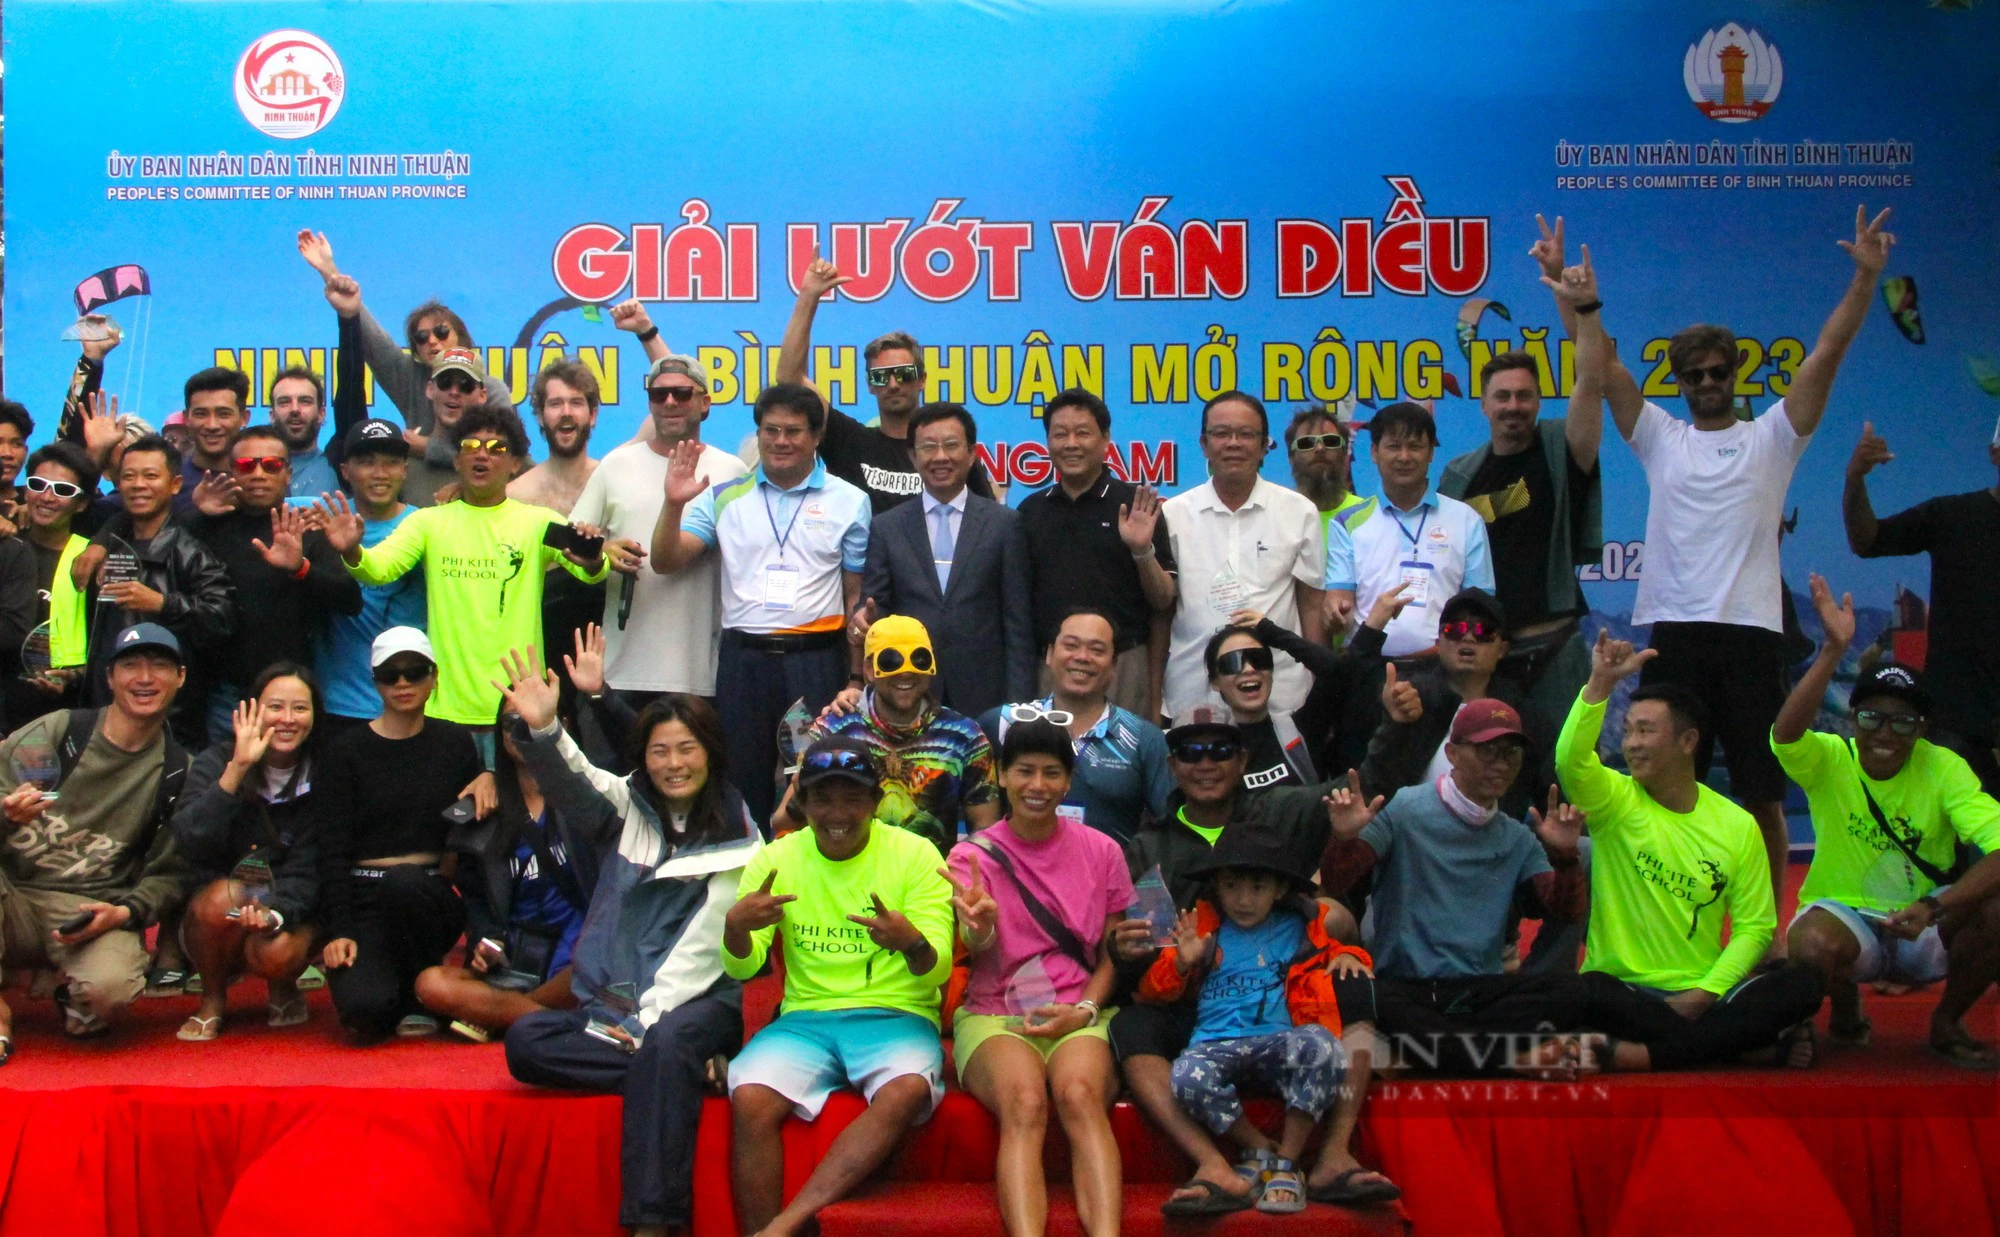 Hai VĐV Việt Nam suất sắc giành giải nhất lướt ván diều Ninh Thuận – Bình Thuận mở rộng năm 2023 - Ảnh 5.